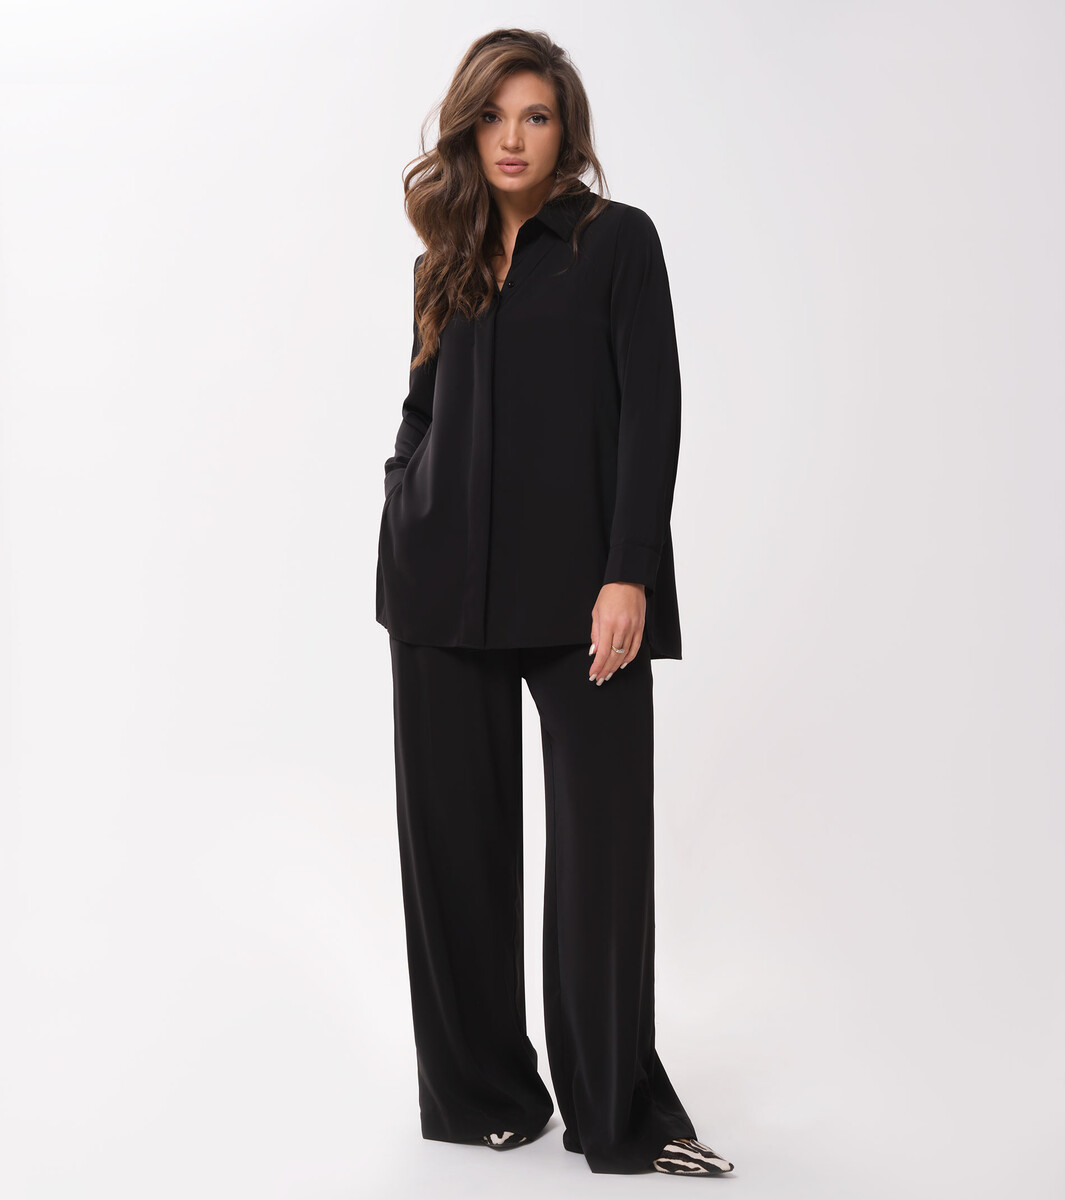 Комплект женский (блузка, брюки) Panda, размер 42, цвет черный 06666356 - фото 1